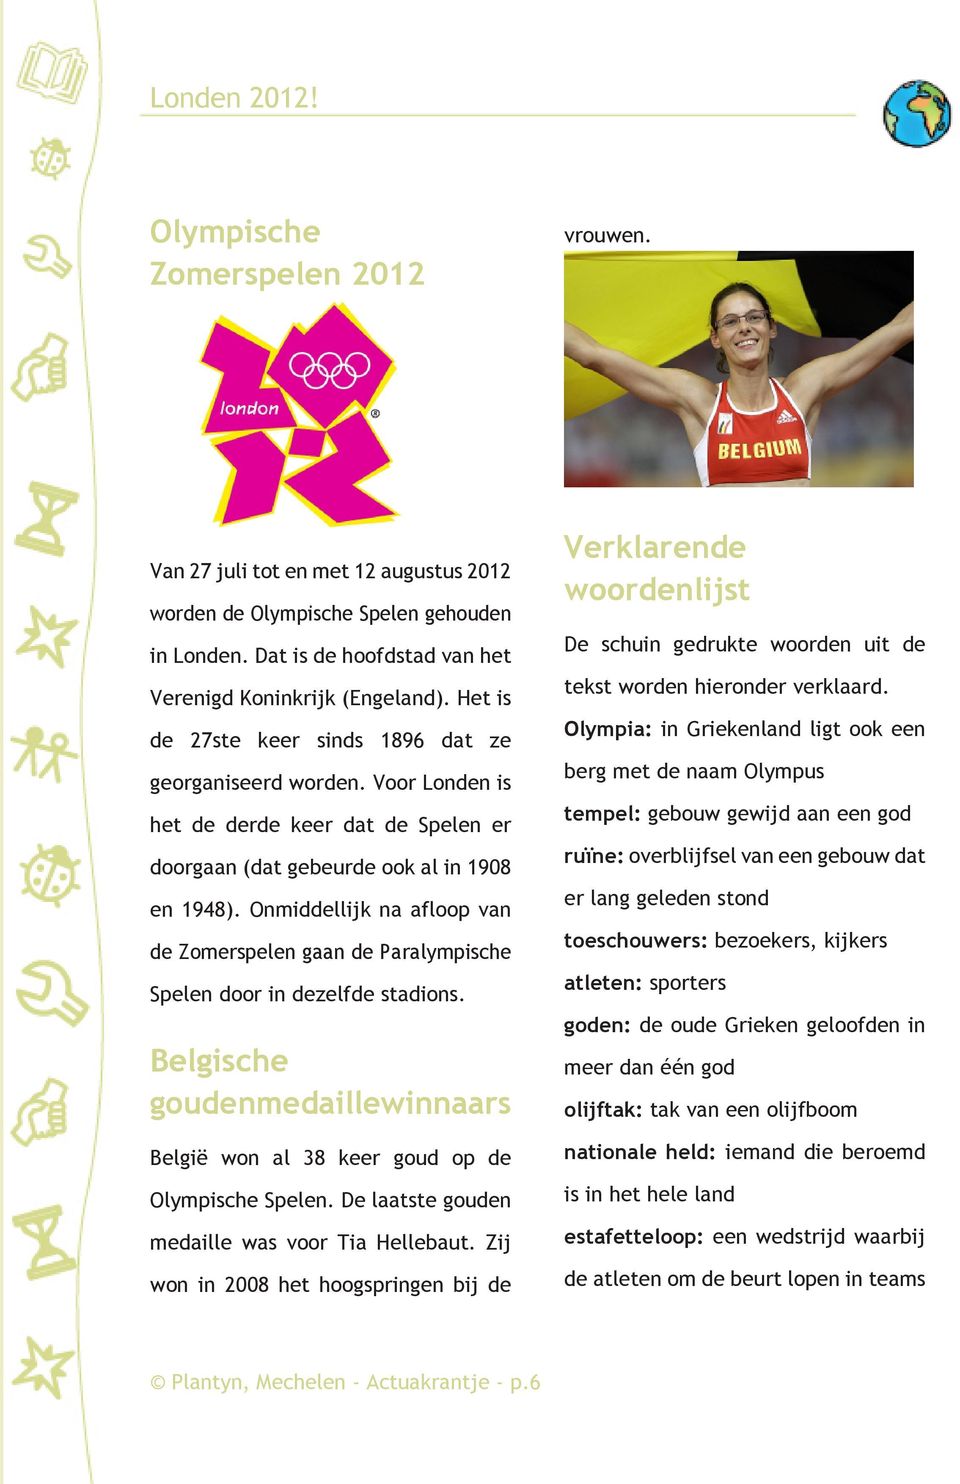 Onmiddellijk na afloop van de Zomerspelen gaan de Paralympische Spelen door in dezelfde stadions. Belgische goudenmedaillewinnaars België won al 38 keer goud op de Olympische Spelen.